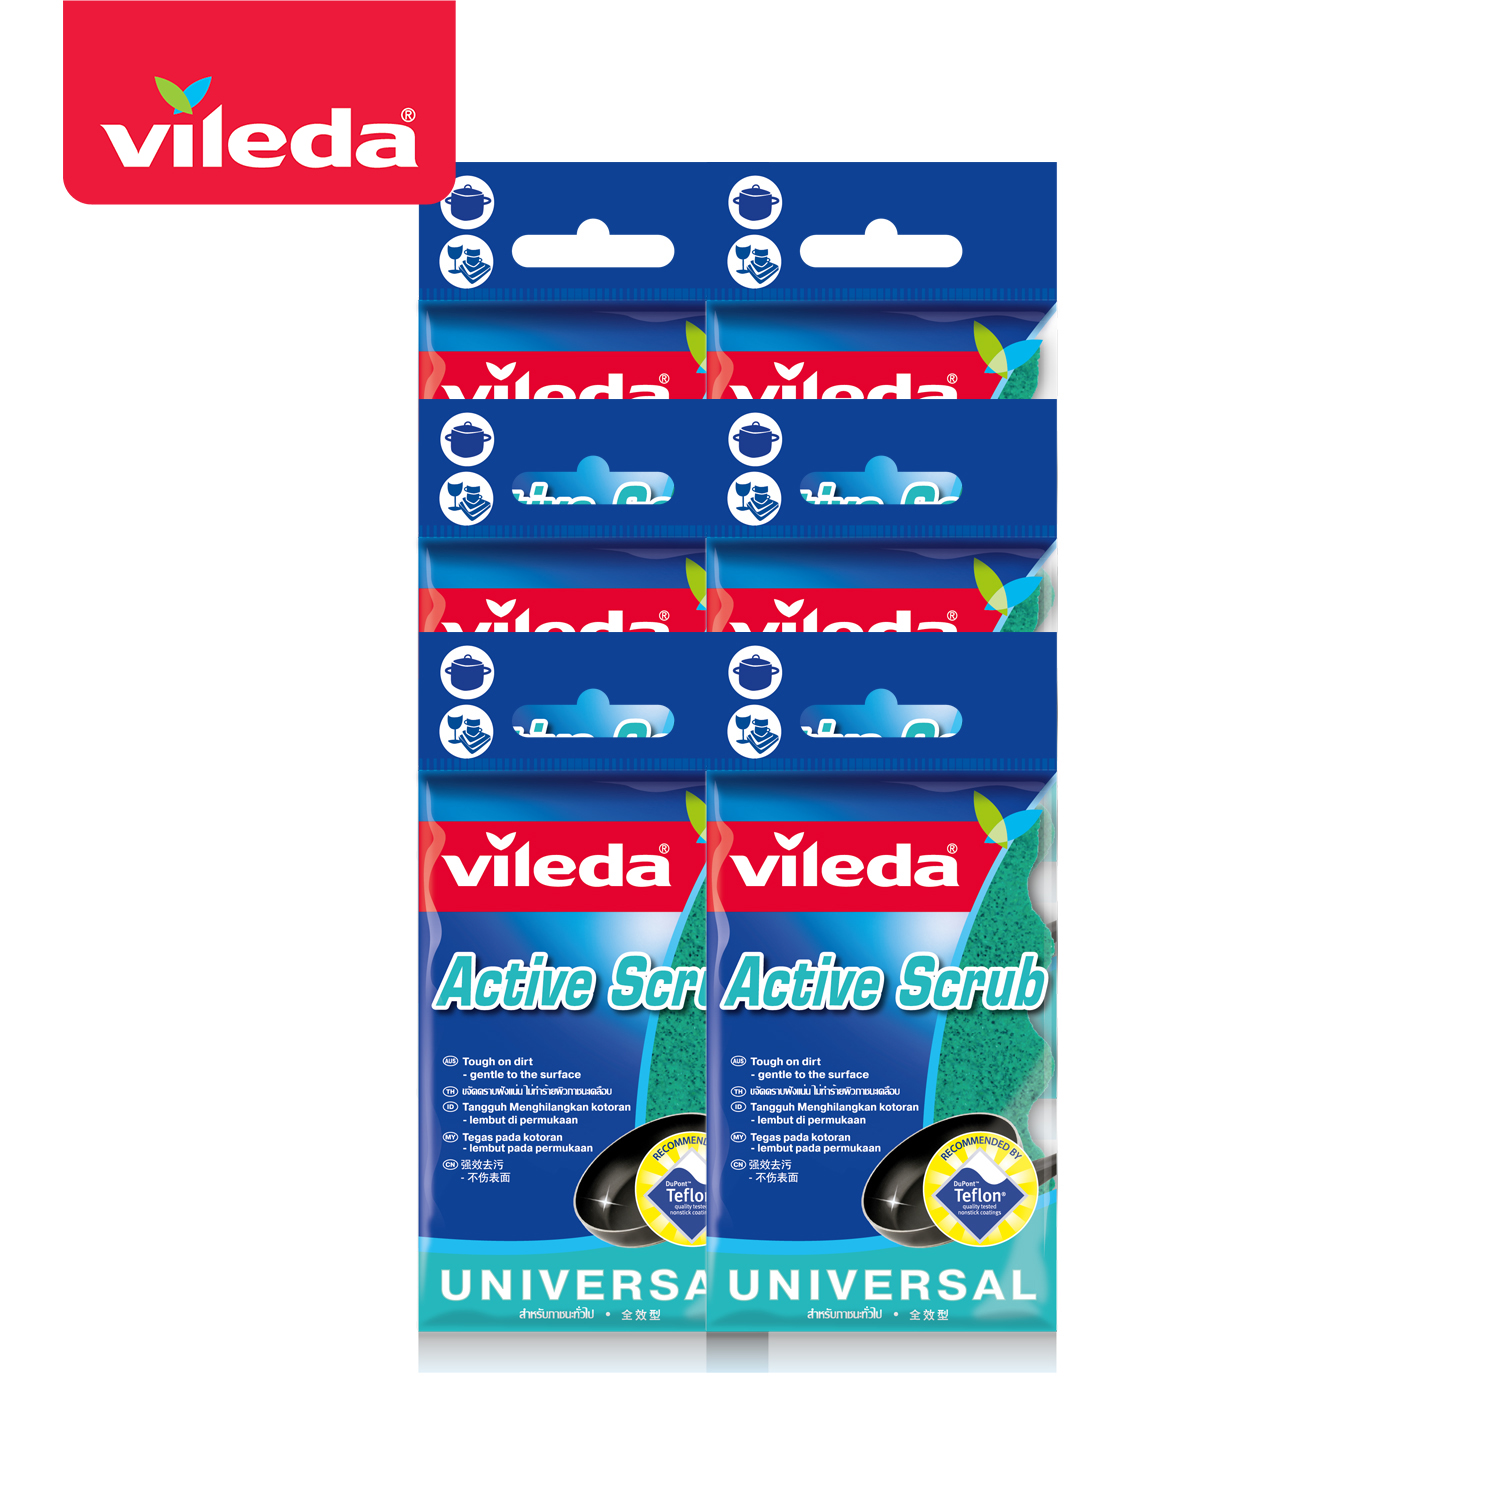 VILEDA Active Scrub - วิเลดา ฟองน้ำแอคทีฟ สครับ Pack 6 ฟองน้ำเทฟลอน